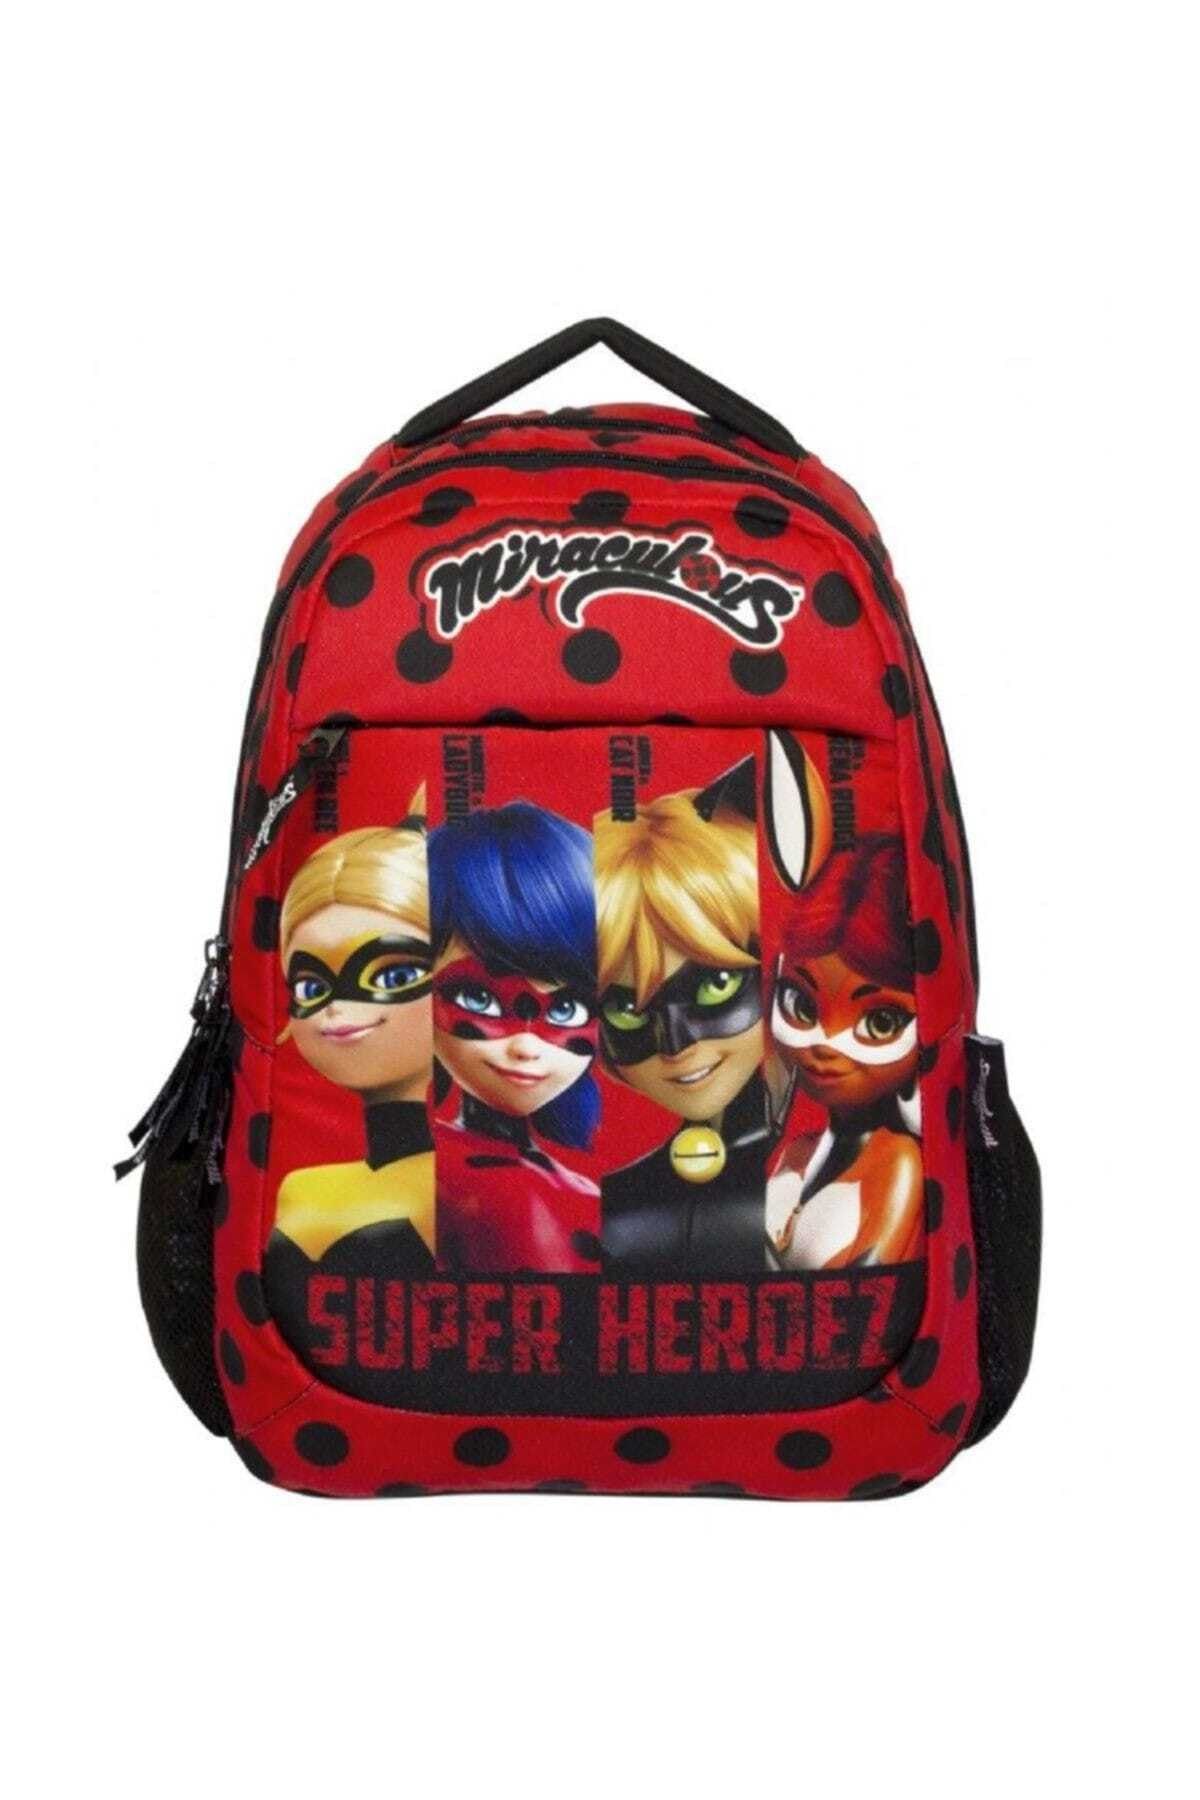 Miraculous Ladybug Süper Heroes Kırmızı Üç Bölme İlkokul Çanta - Kız Çocuk